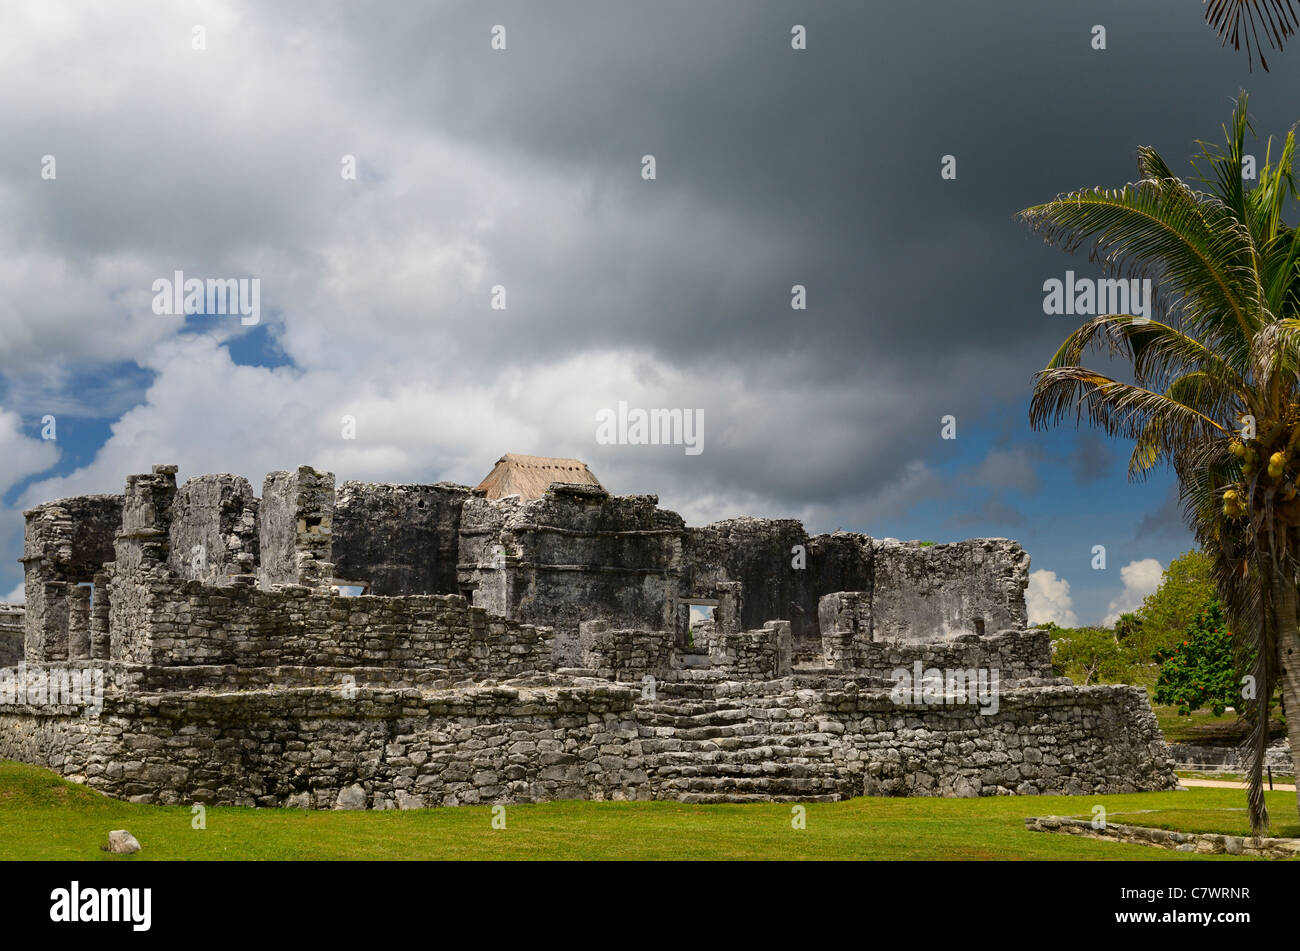 Tempel des absteigenden Gott in Tulum Mexiko mit Storm cloud und Kokospalme Stockfoto